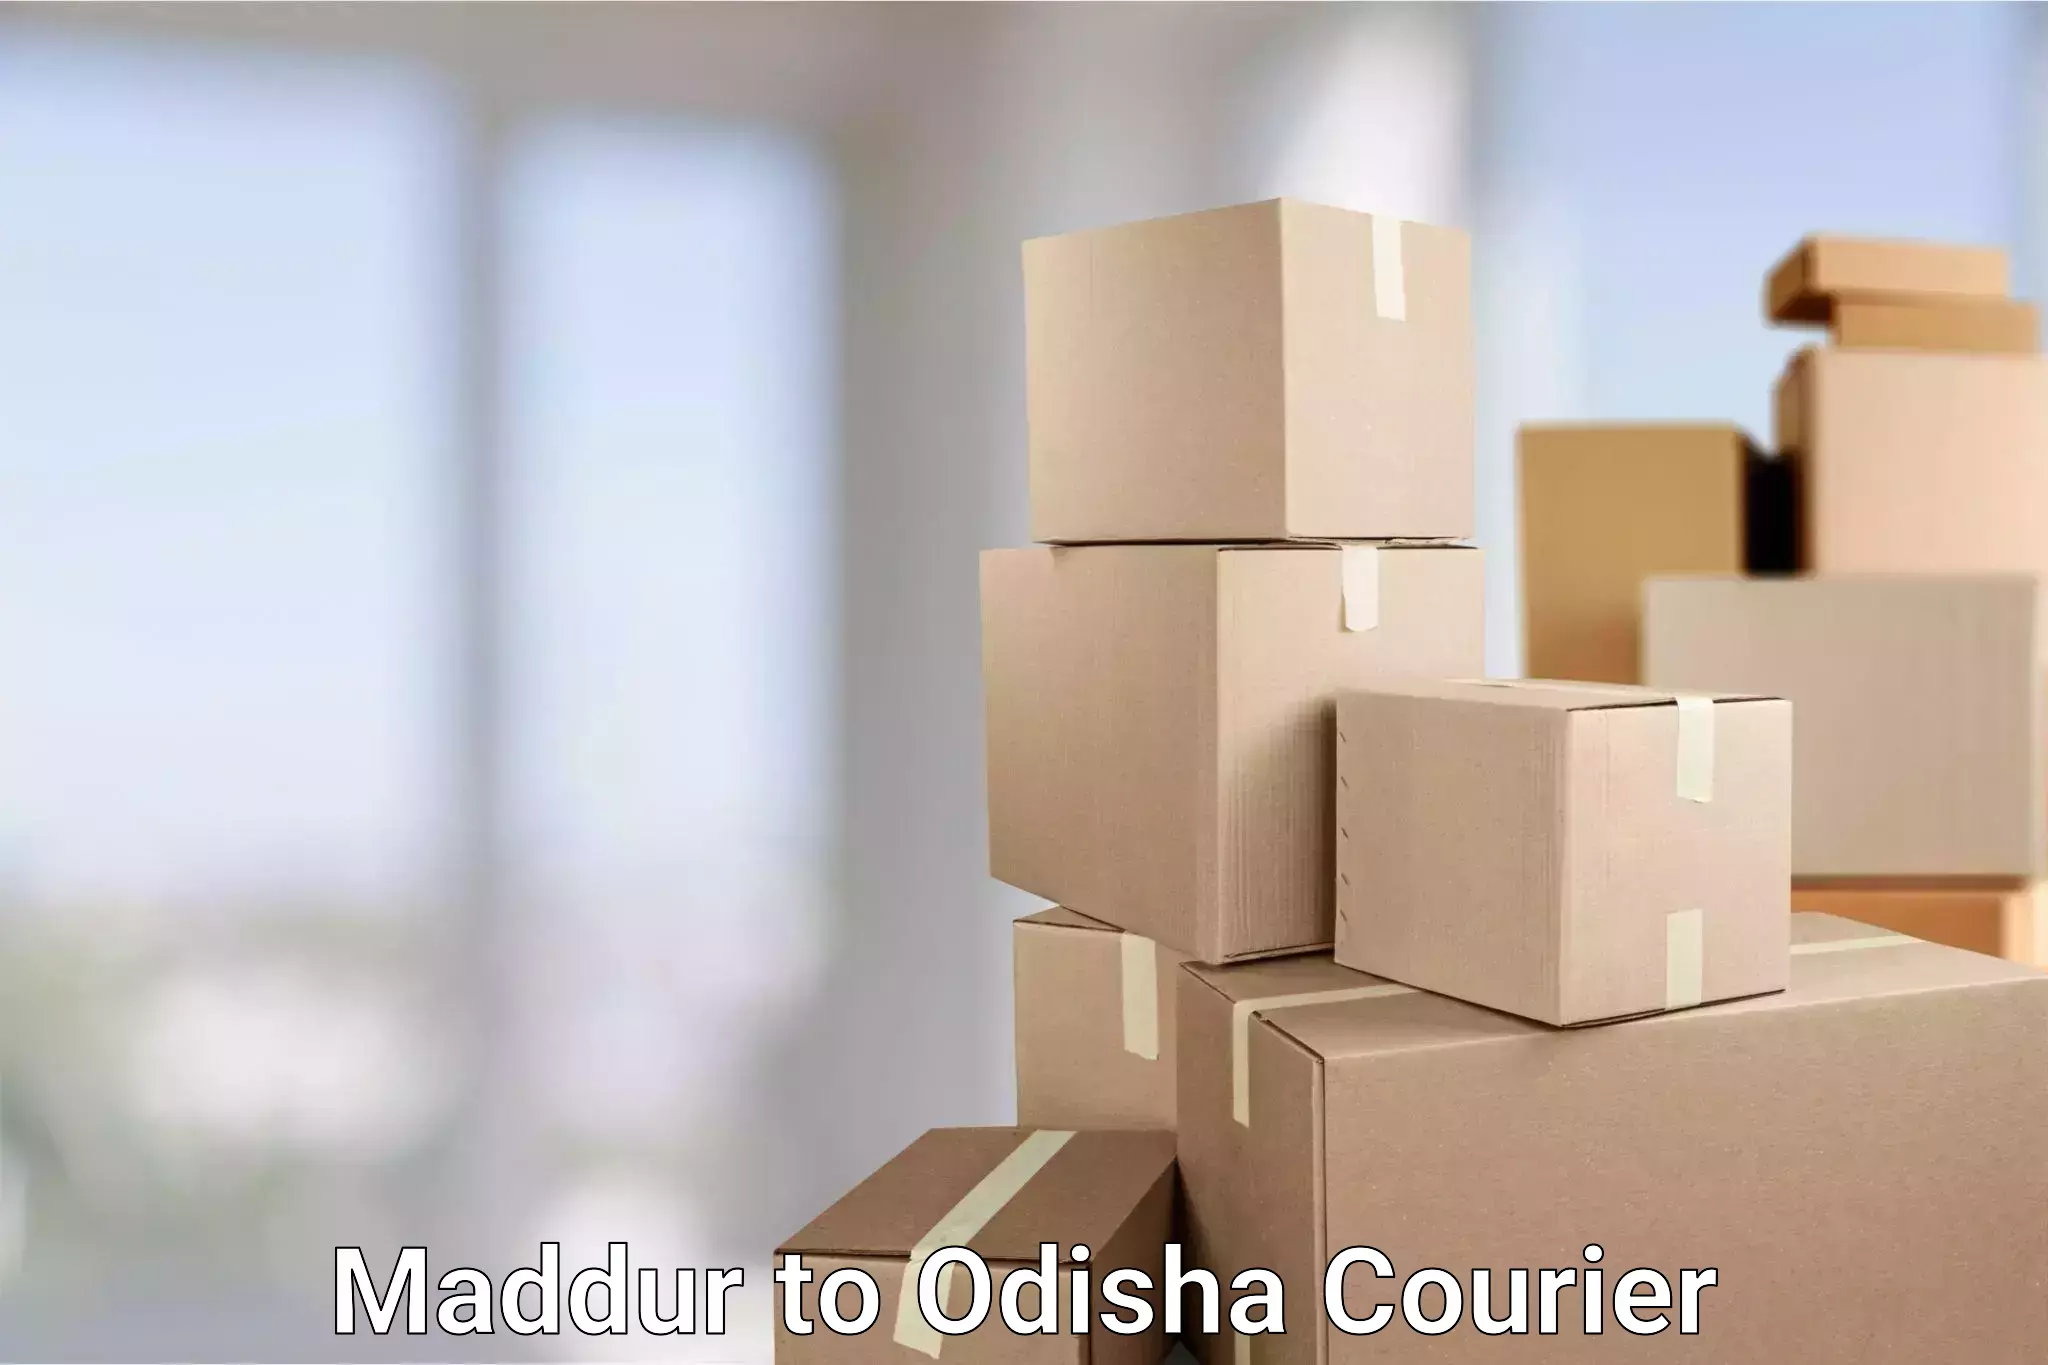 Smart shipping technology in Maddur to Odisha